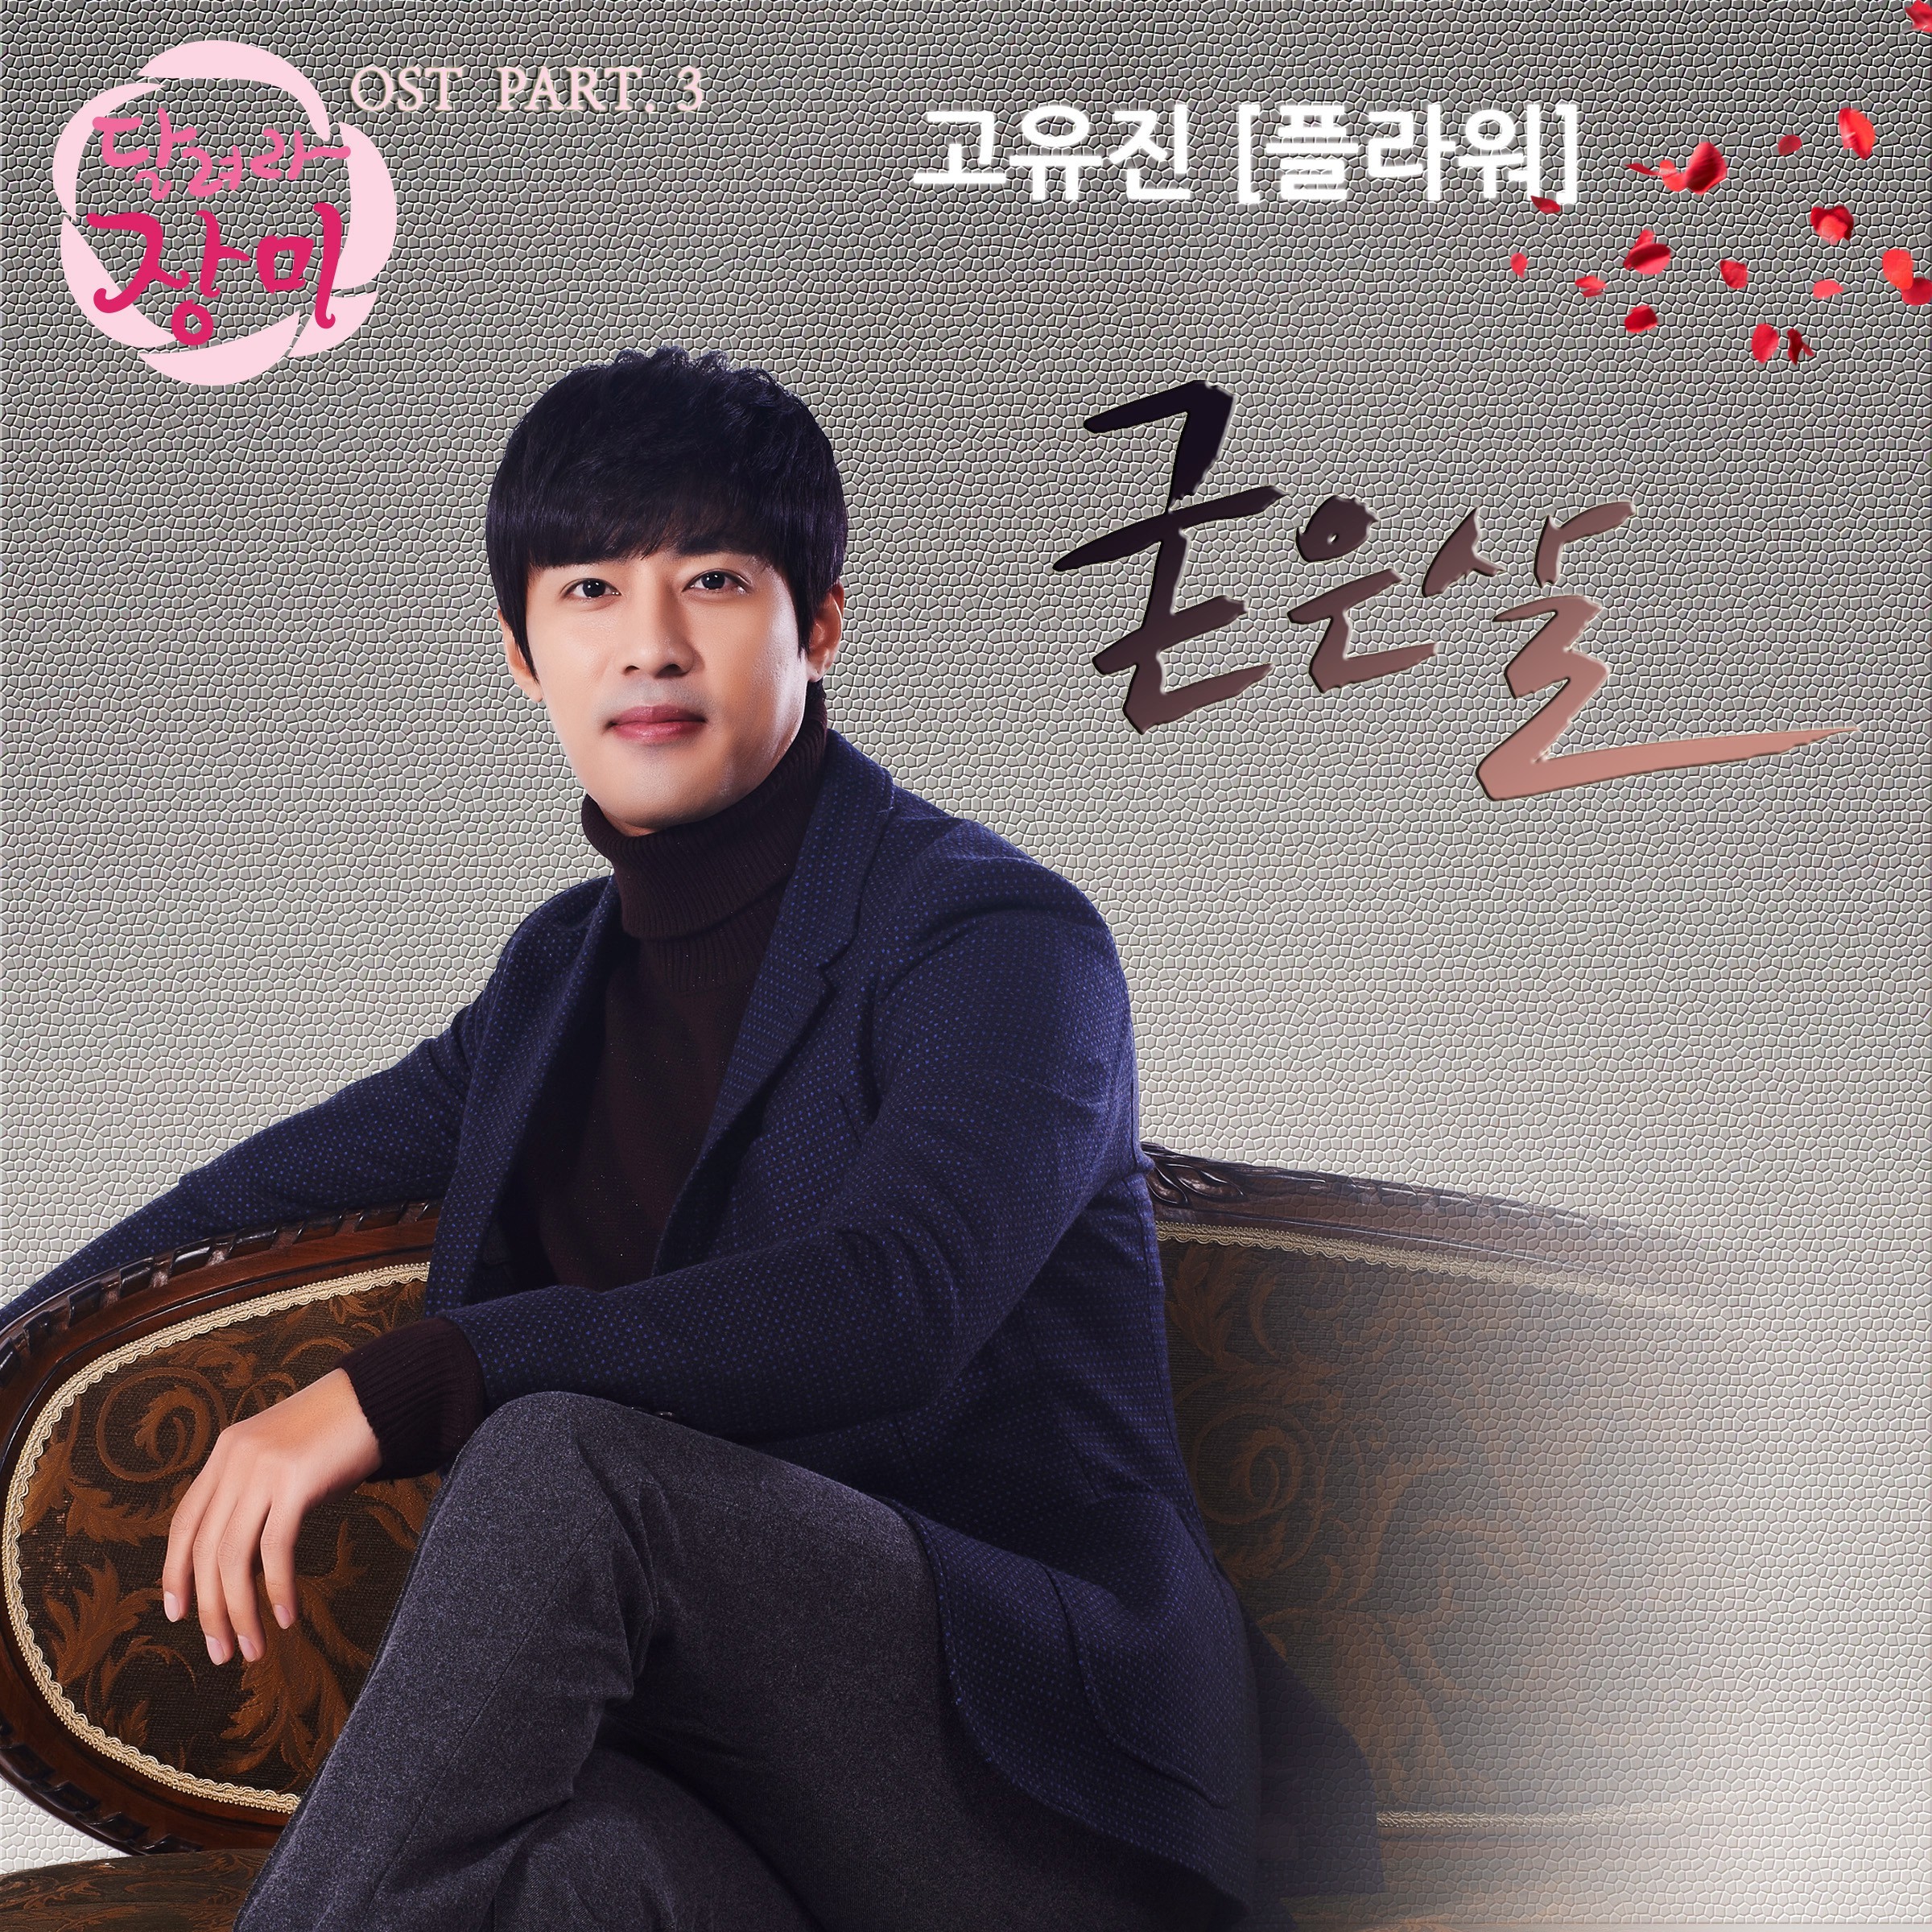 [미리듣기] 고유진(플라워) - 달려라 장미 (SBS 일일드라마) OST - Part.3 | 인스티즈